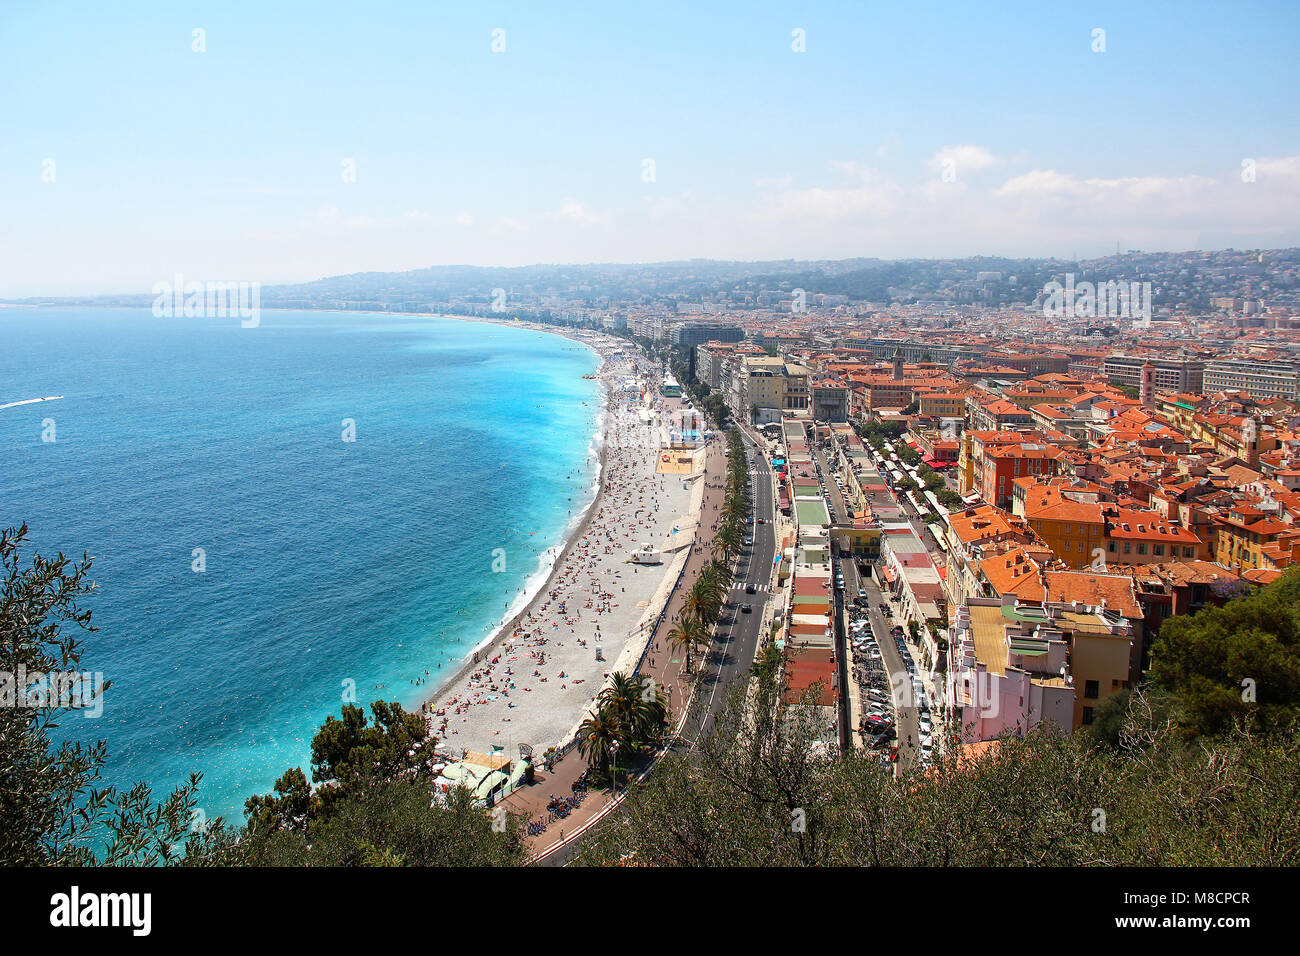 Plage de la ville de Nice et la Promenade des Anglais vue aérienne, de la Côte d'Azur, France Banque D'Images